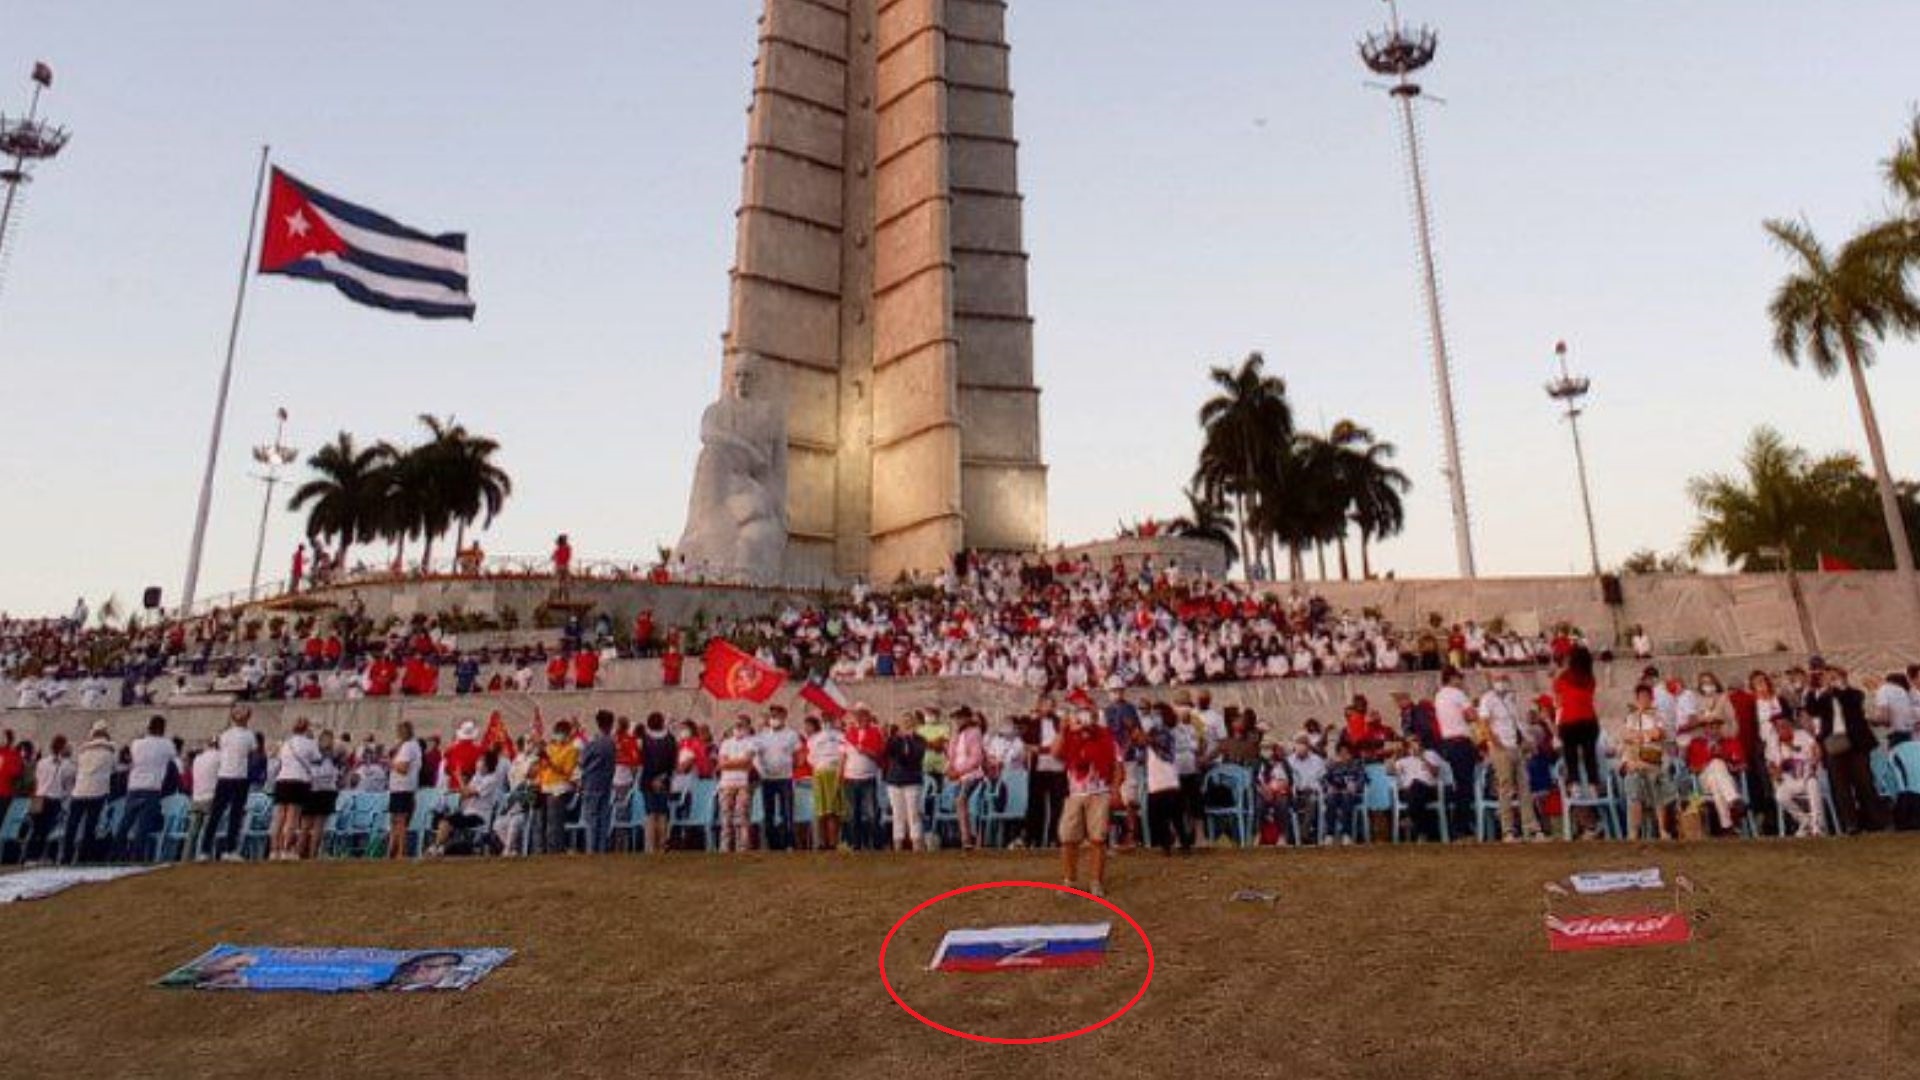 Cubadebate publicó la imagen de una concentración de personas, que tenían ante sí una bandera de Rusia con la 'Z', símbolo de apoyo a Putin y la invasión a Ucrania